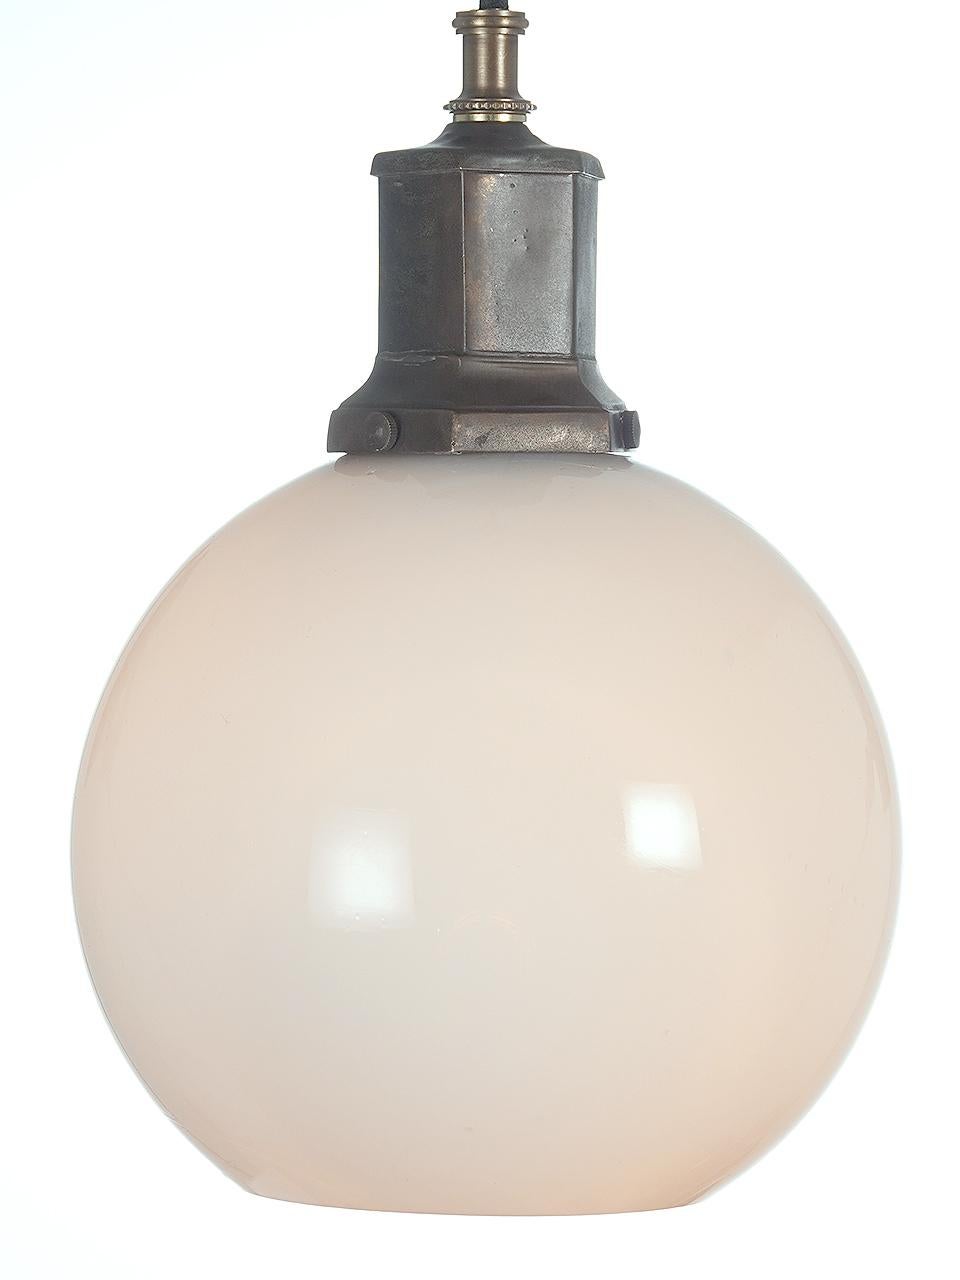 Diese eleganten mundgeblasenen Lampenschirme sind aus Vaseline-Glas und weisen die Merkmale von handgefertigtem Glas auf. Sie haben ein schönes, gleichmäßiges und warmes Licht ohne Glühfadenglanz. Die Leuchte hat einen interessanten, schweren